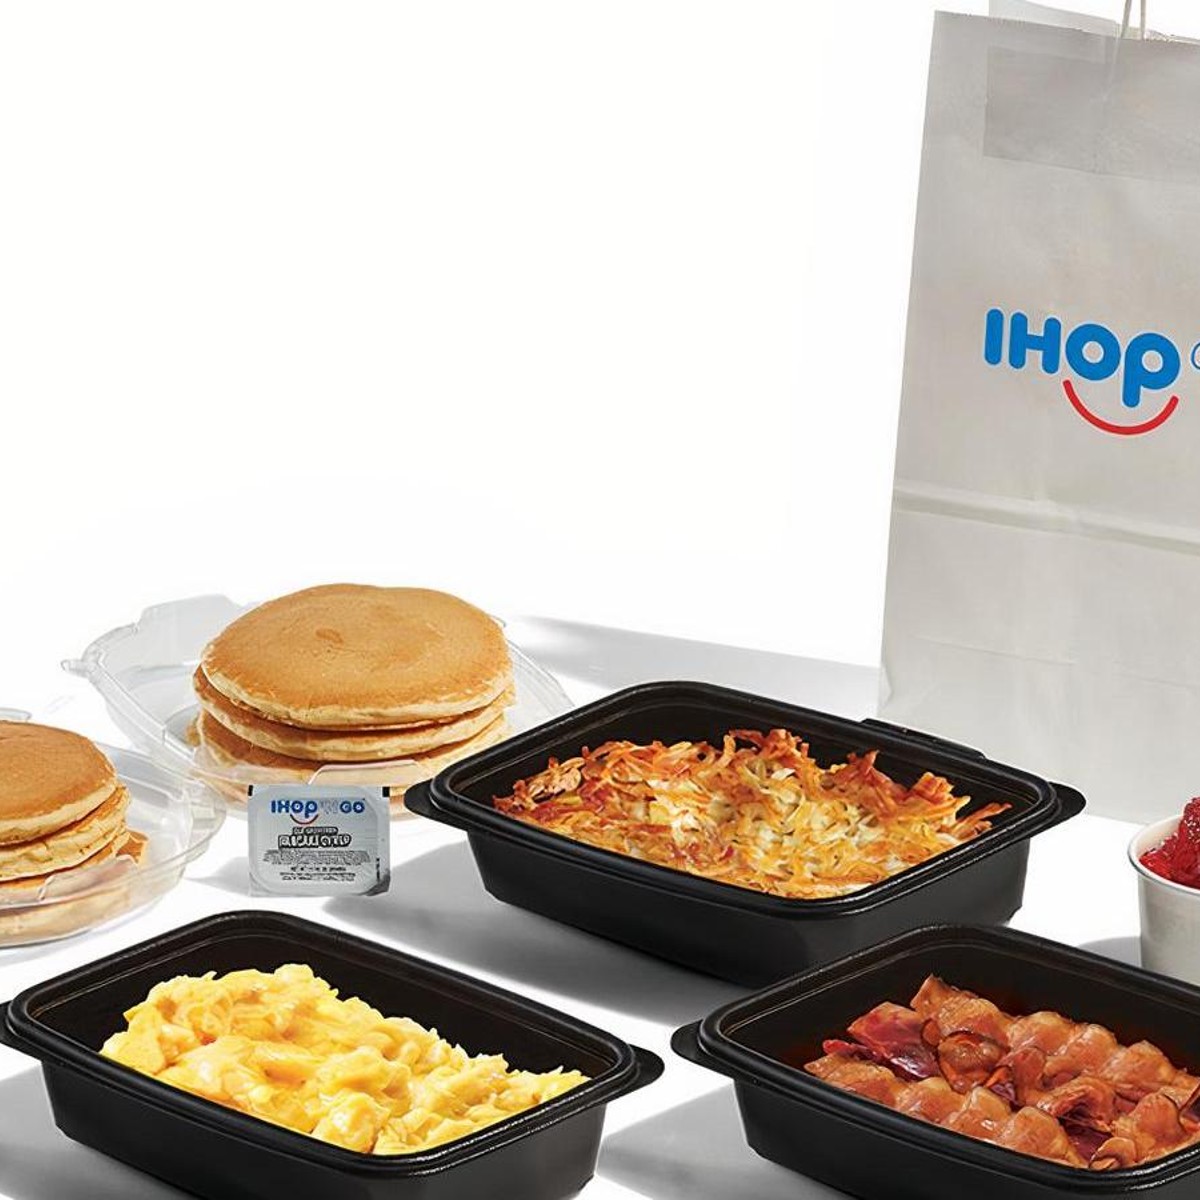 IHOP® Menu - Breakfast, Appetizers, Lunch & Entrees